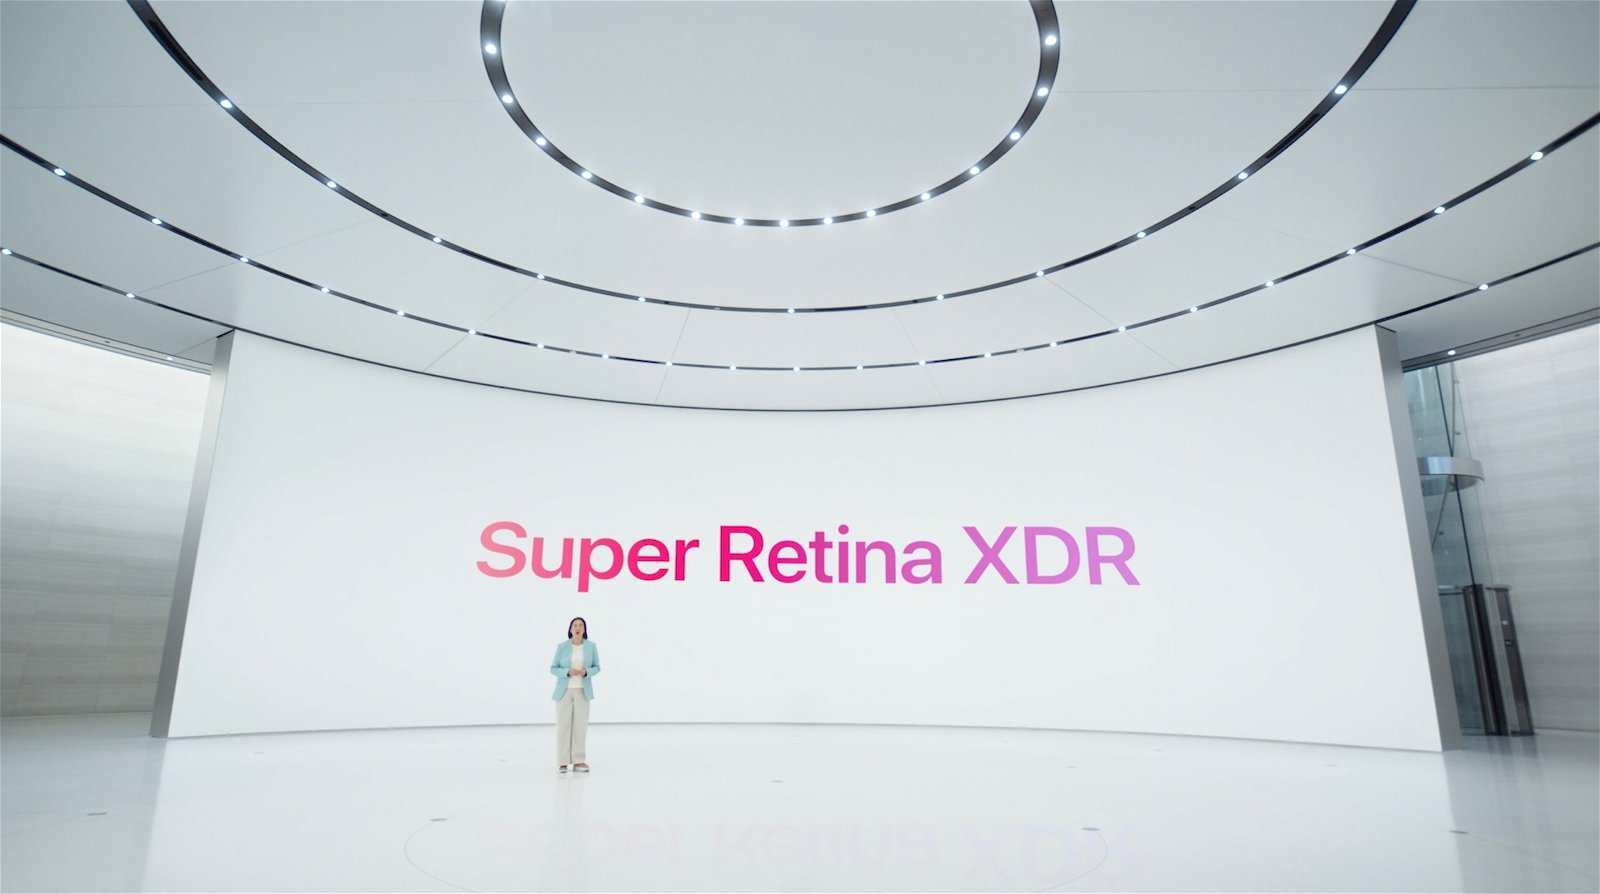 Super Retina XDR